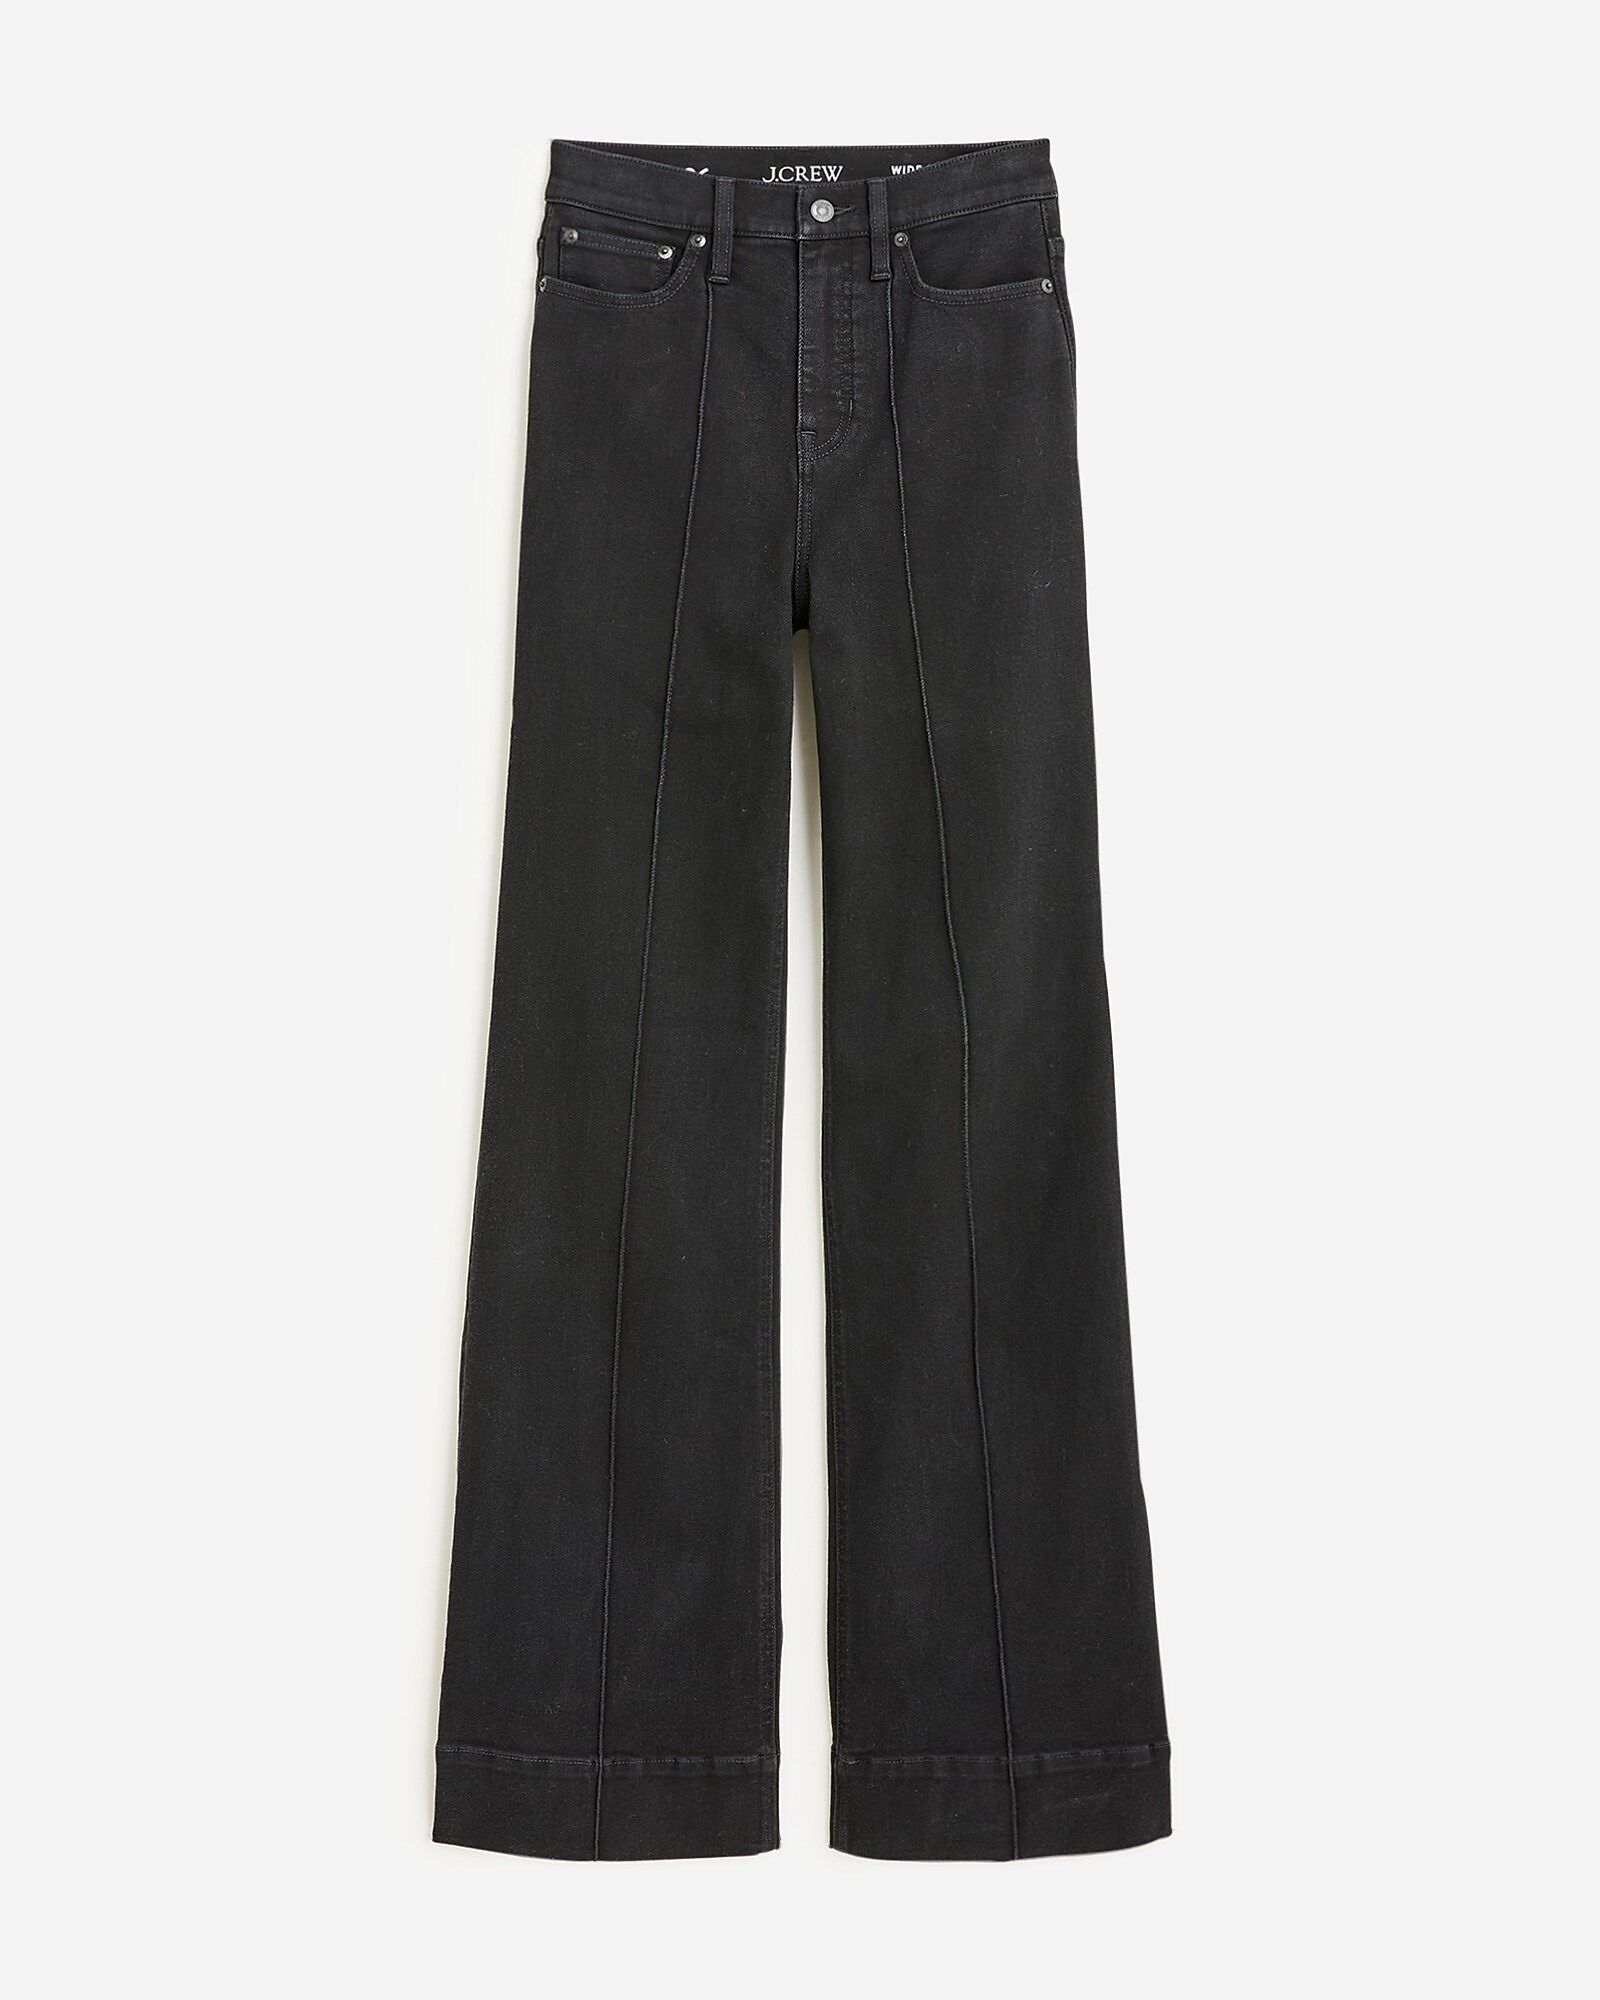 Pintuck denim trouser in black | J.Crew US